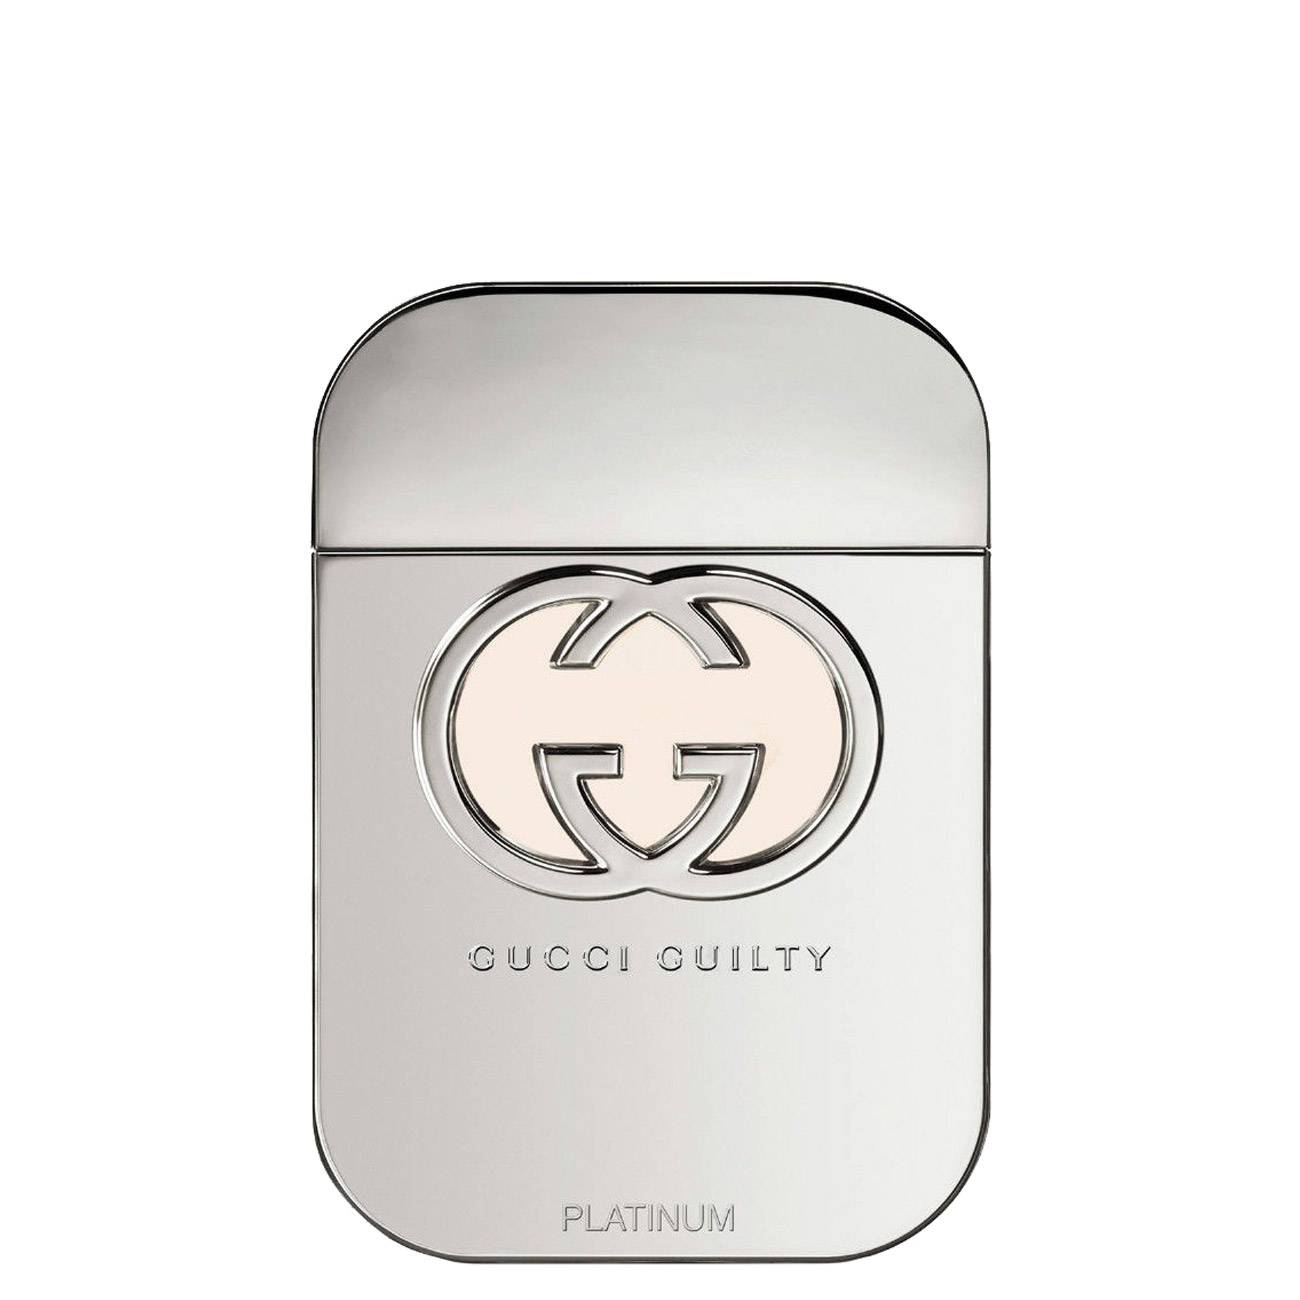 Apa de Toaleta Gucci GUILTY PLATINUM 75ml cu comanda online